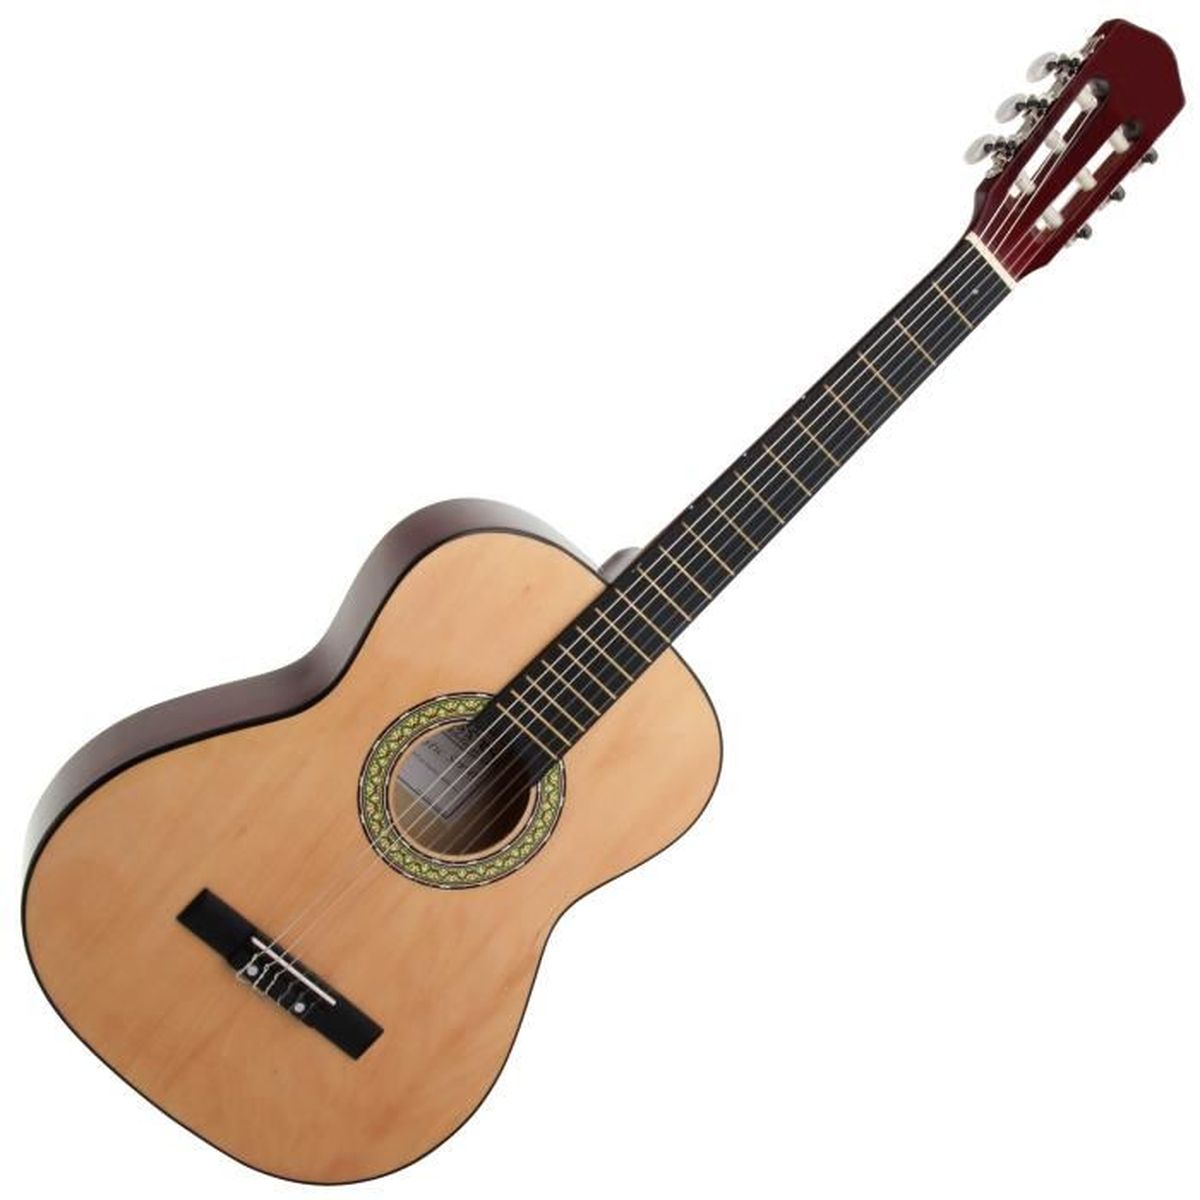 Pickup Guitare 12/ trous Pick Up pour guitare acoustique guitare folk Guitare de concert avec 3/ m de c/âble guitare Accessoires